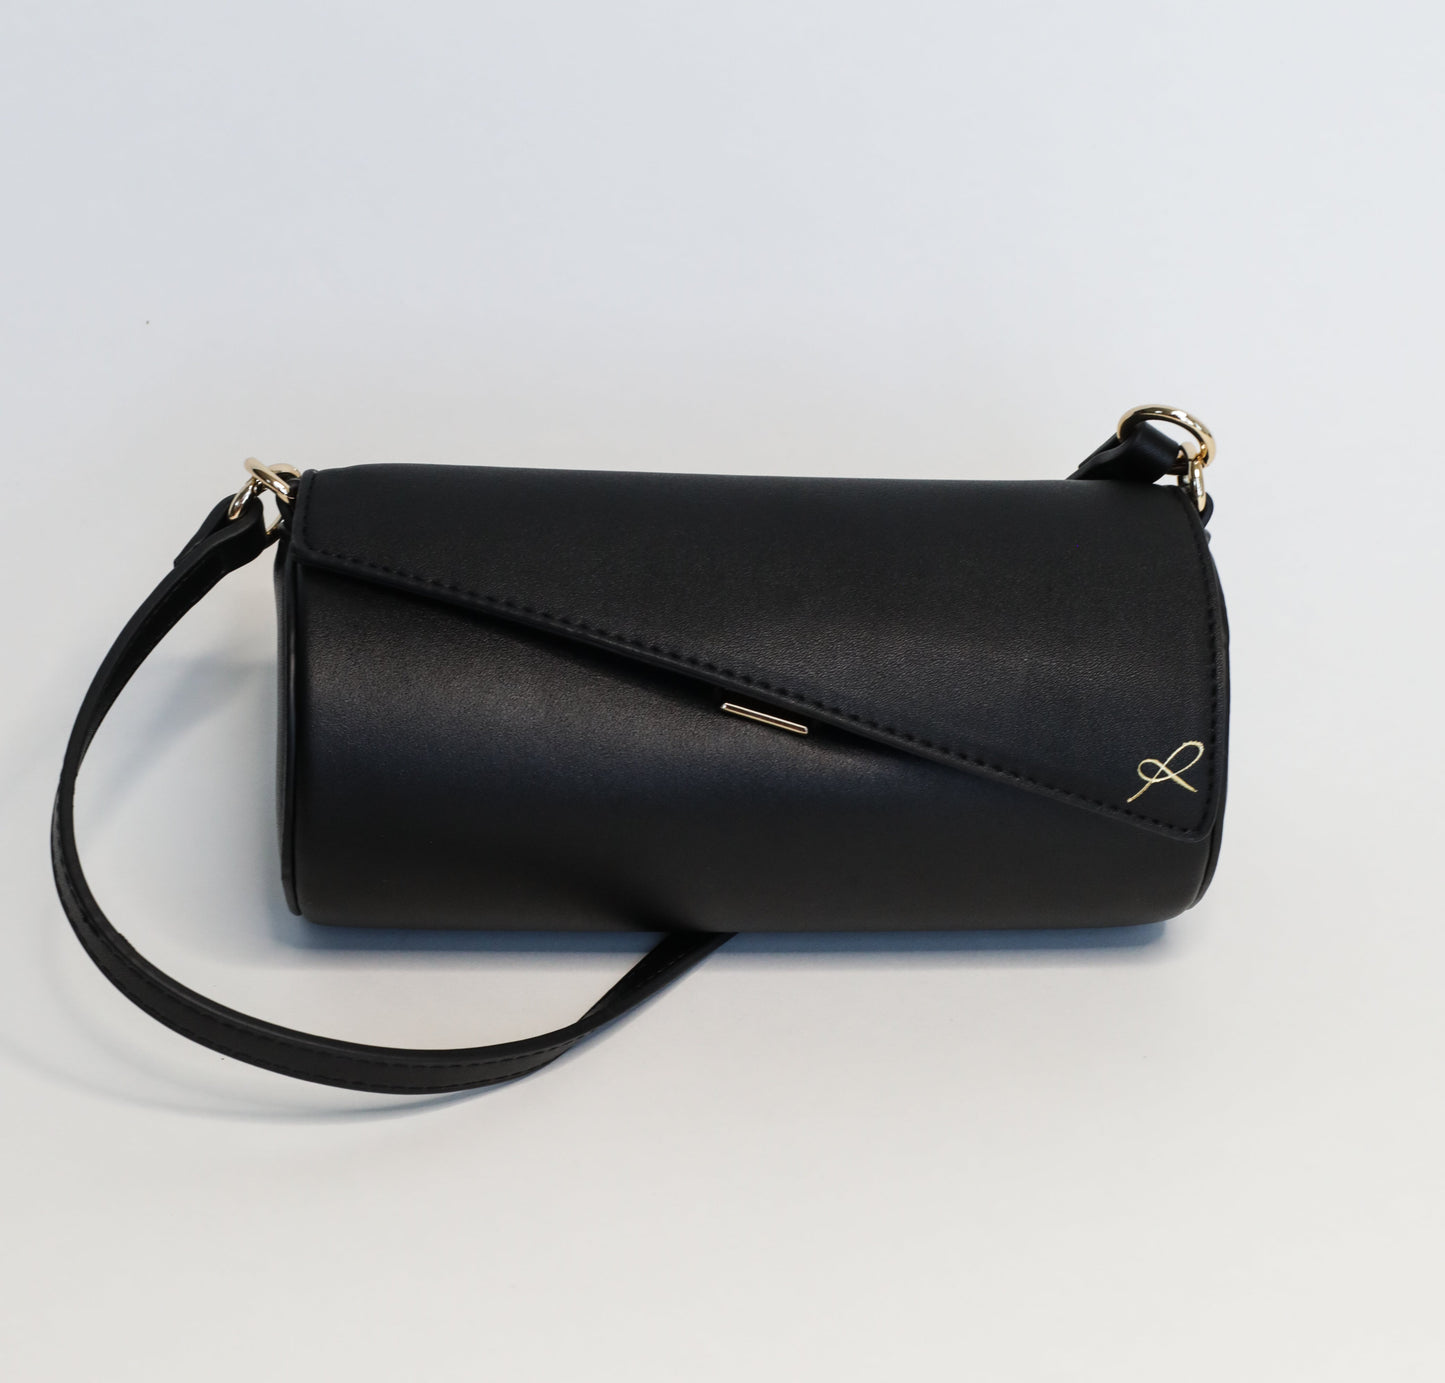 Cylinder Shaped Handbag in the color Black. Bag shown with short strap